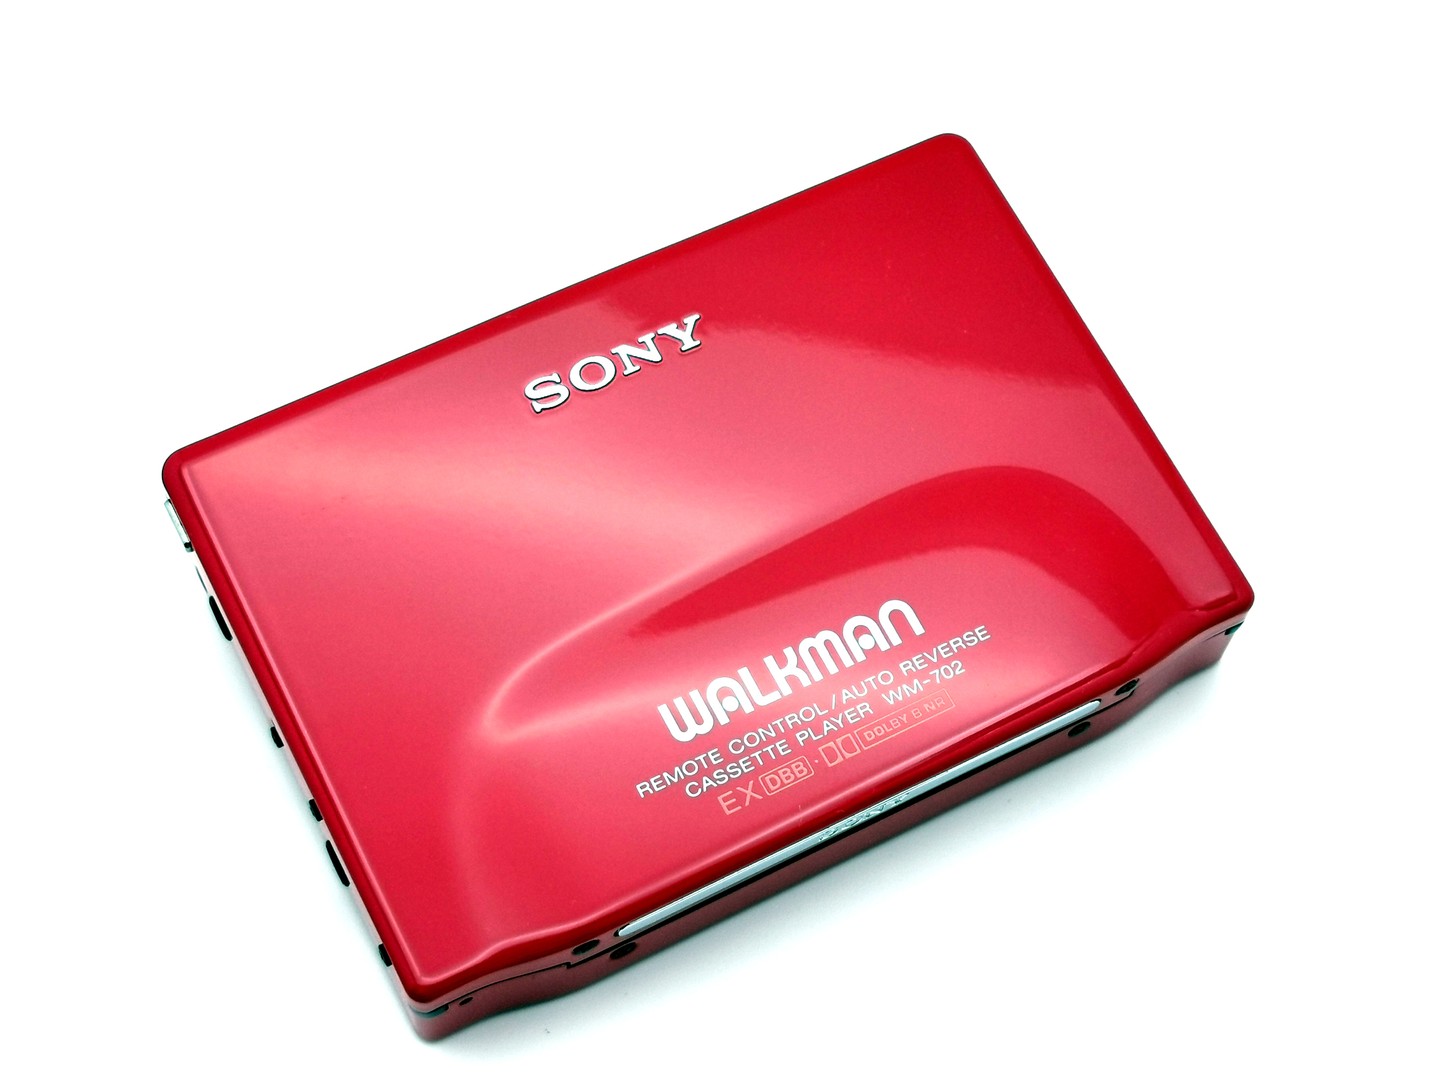 Sony_WM-702_-_Red_angled_ig-boxedwalkman